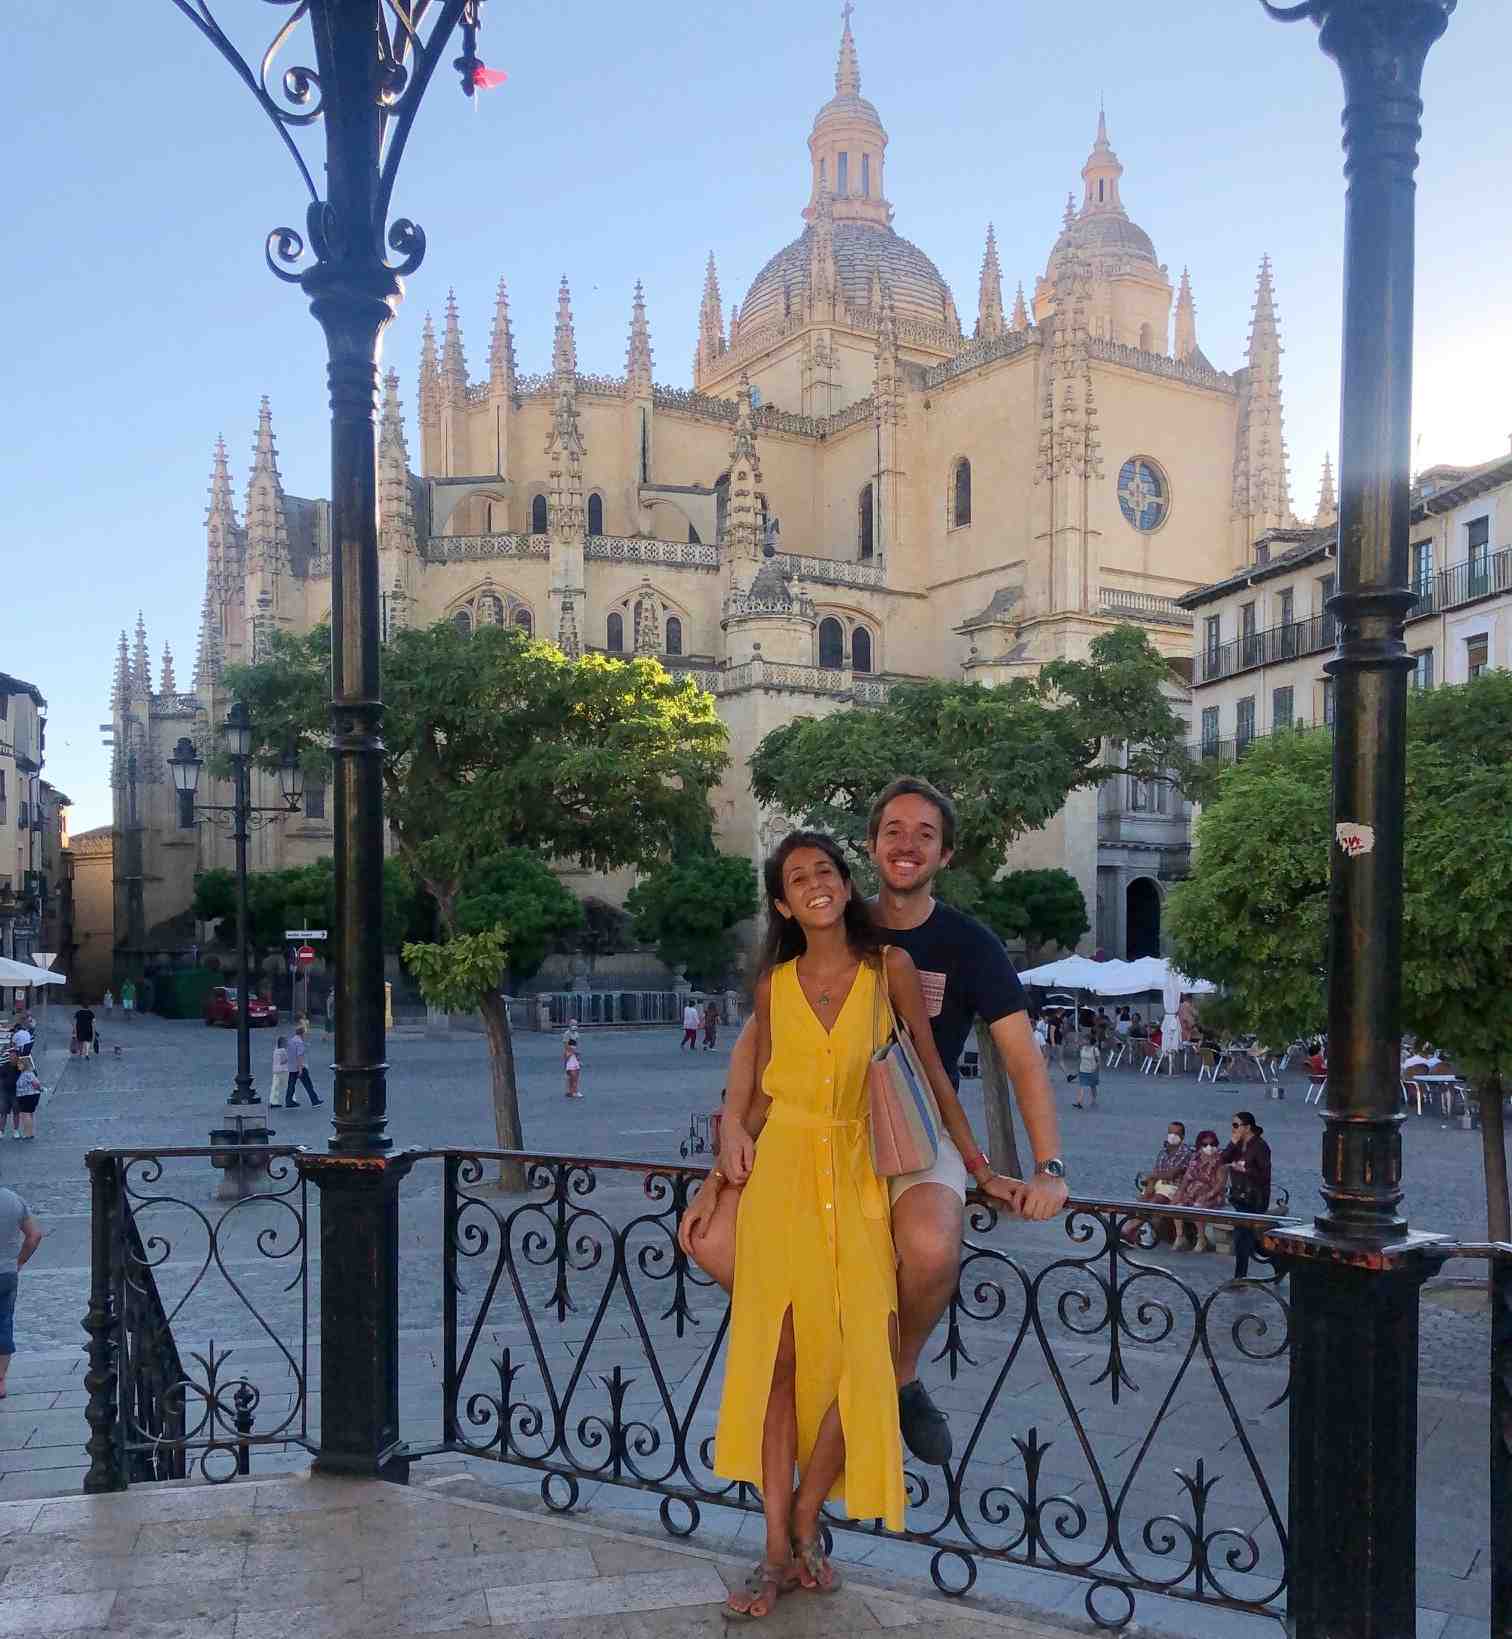 Que hacer en Segovia - Catedral